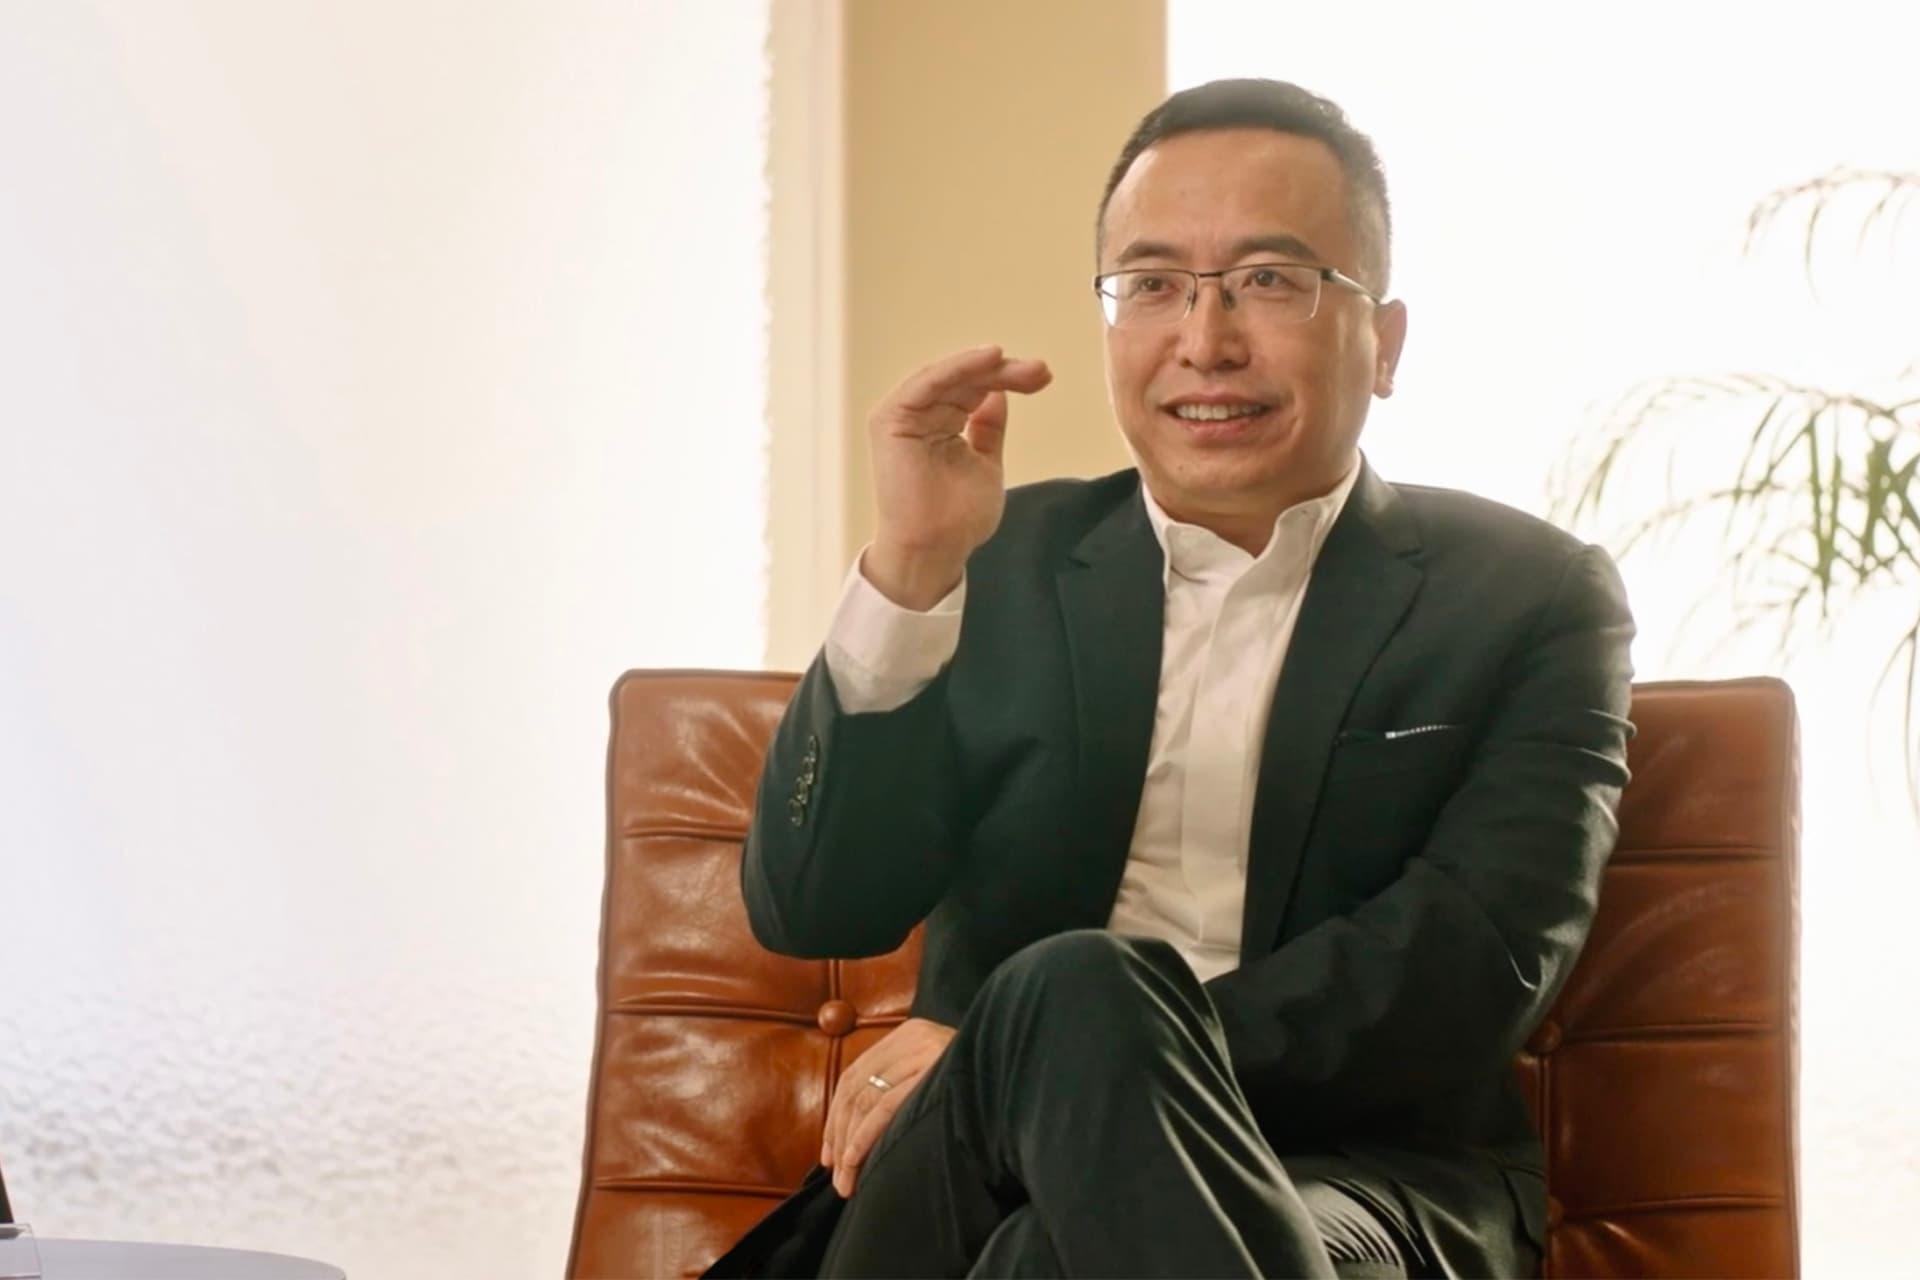 جورج ژائو / George Zhao مدیرعامل آنر روی صندلی اتاق روشن